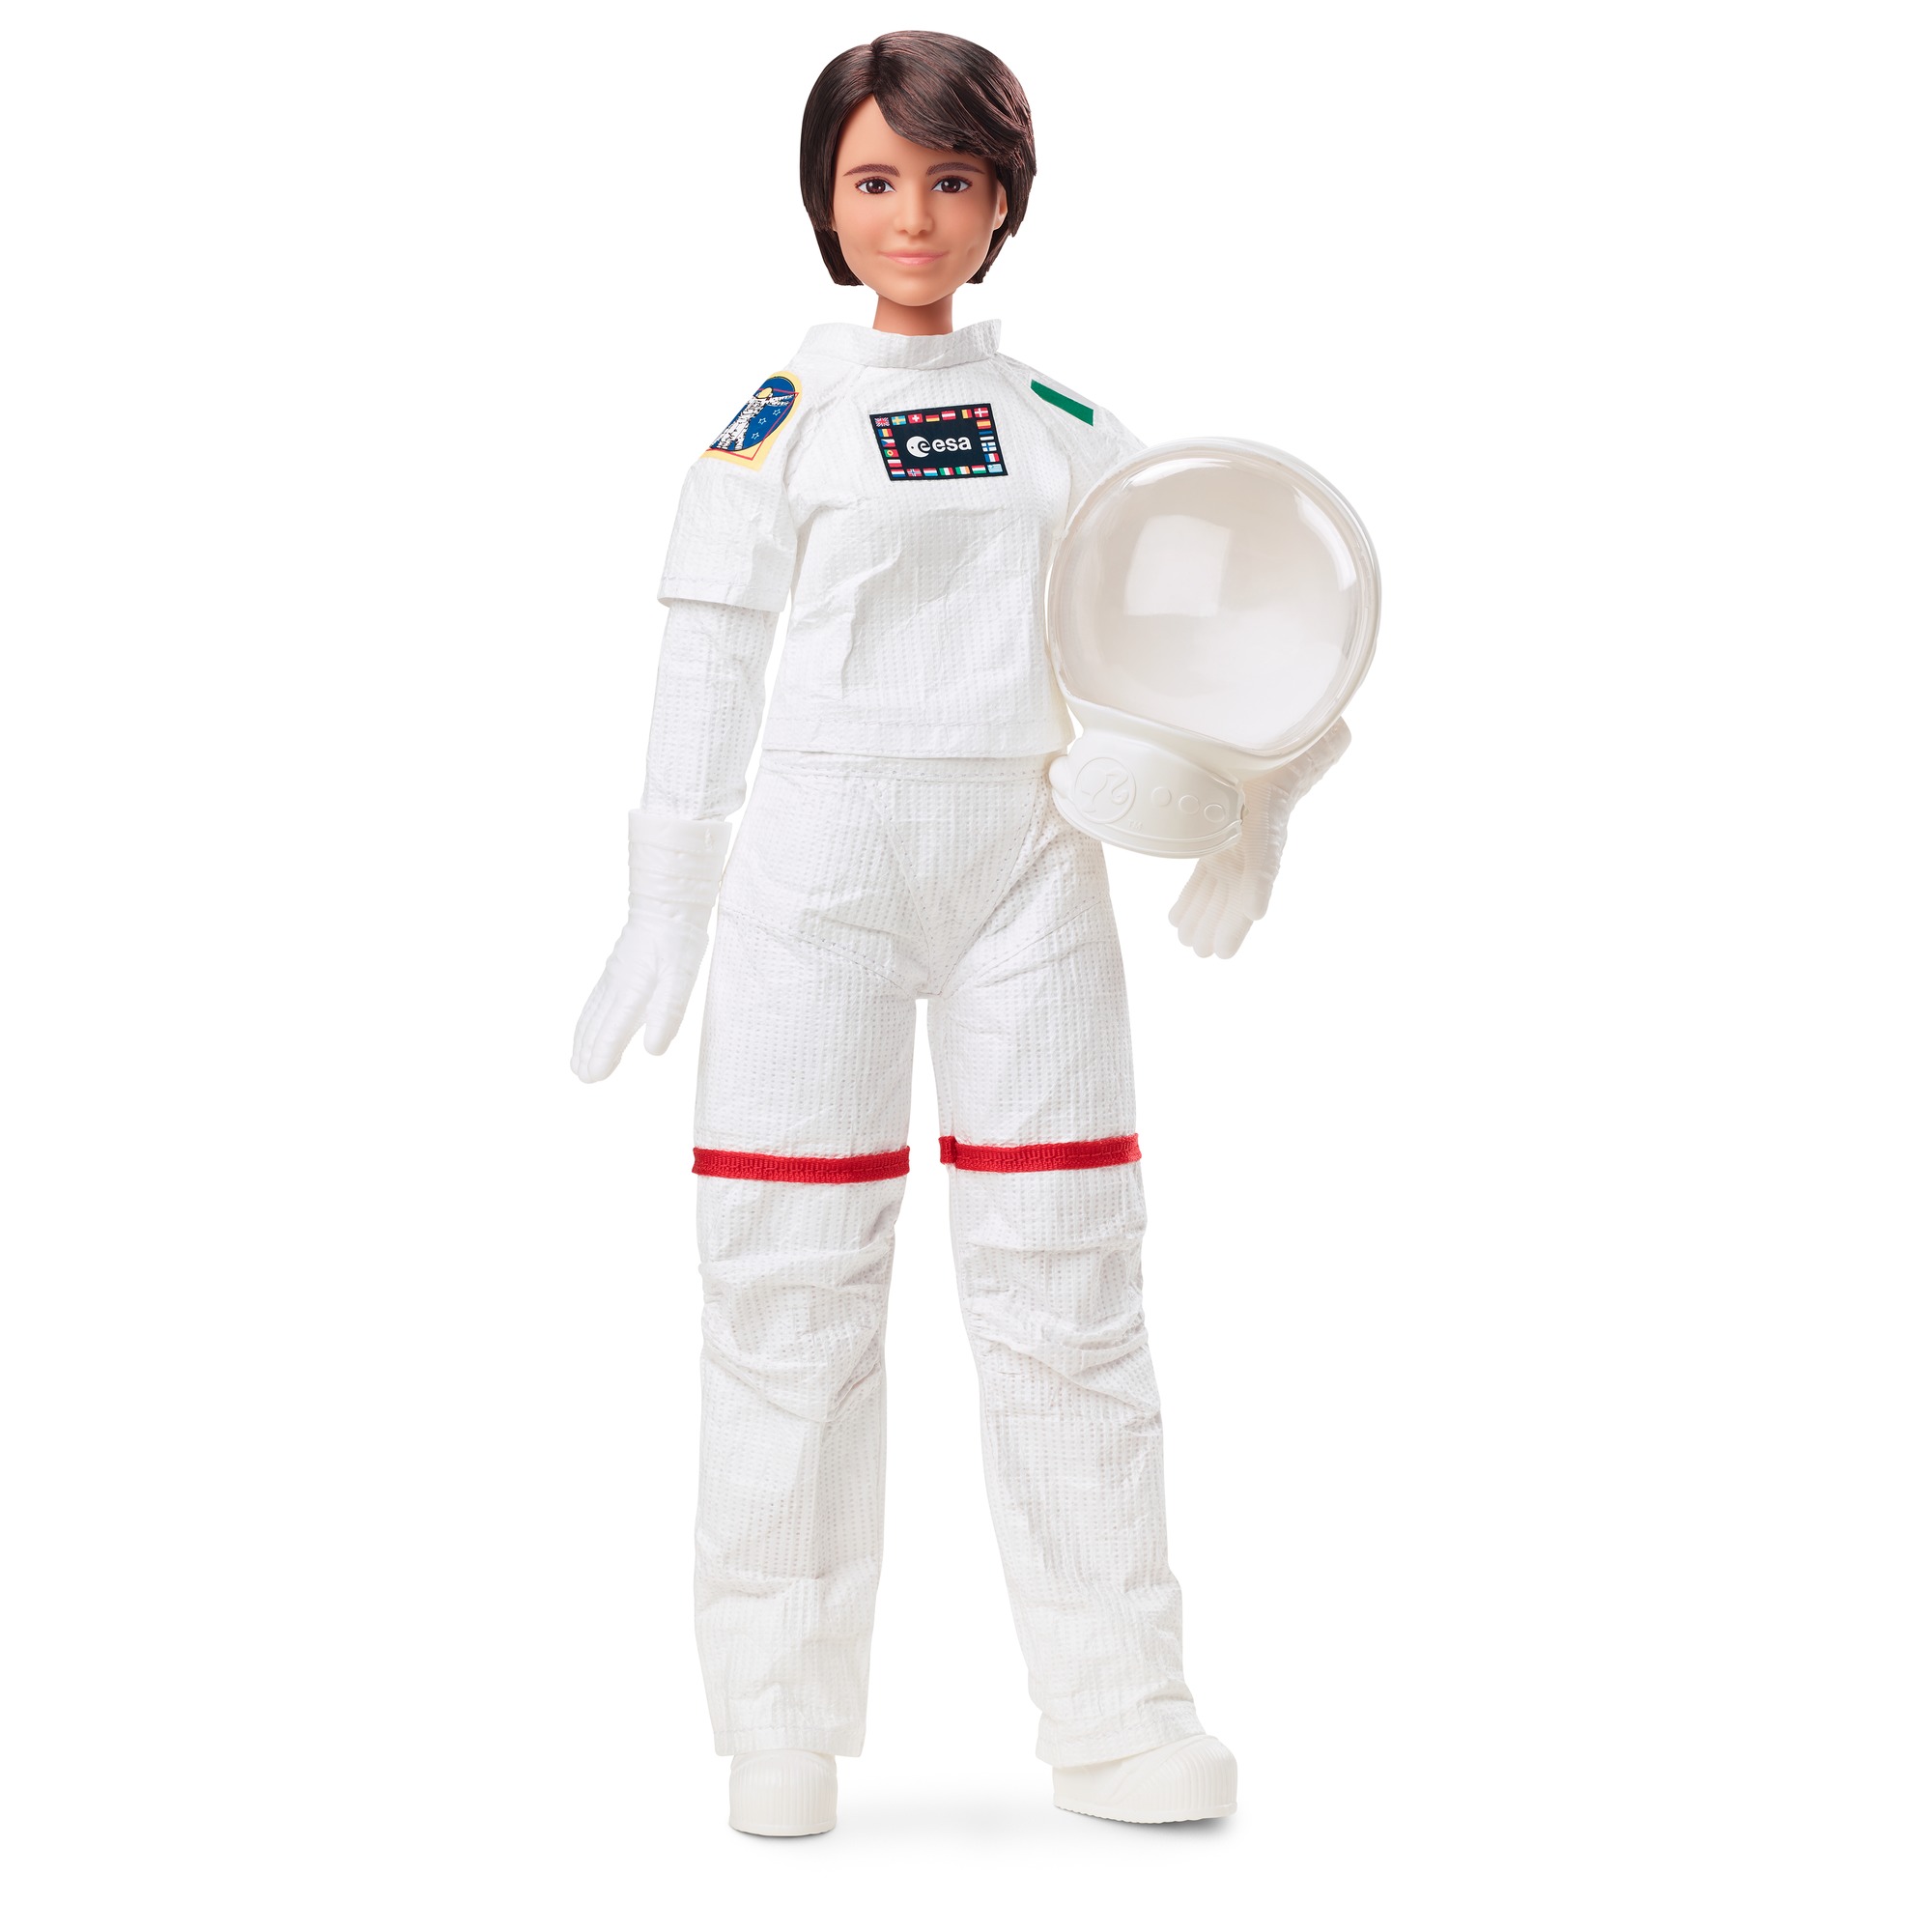 Barbie - samantha cristoforetti (signature role models) bambola astronauta esa con tuta spaziale realistica - Barbie